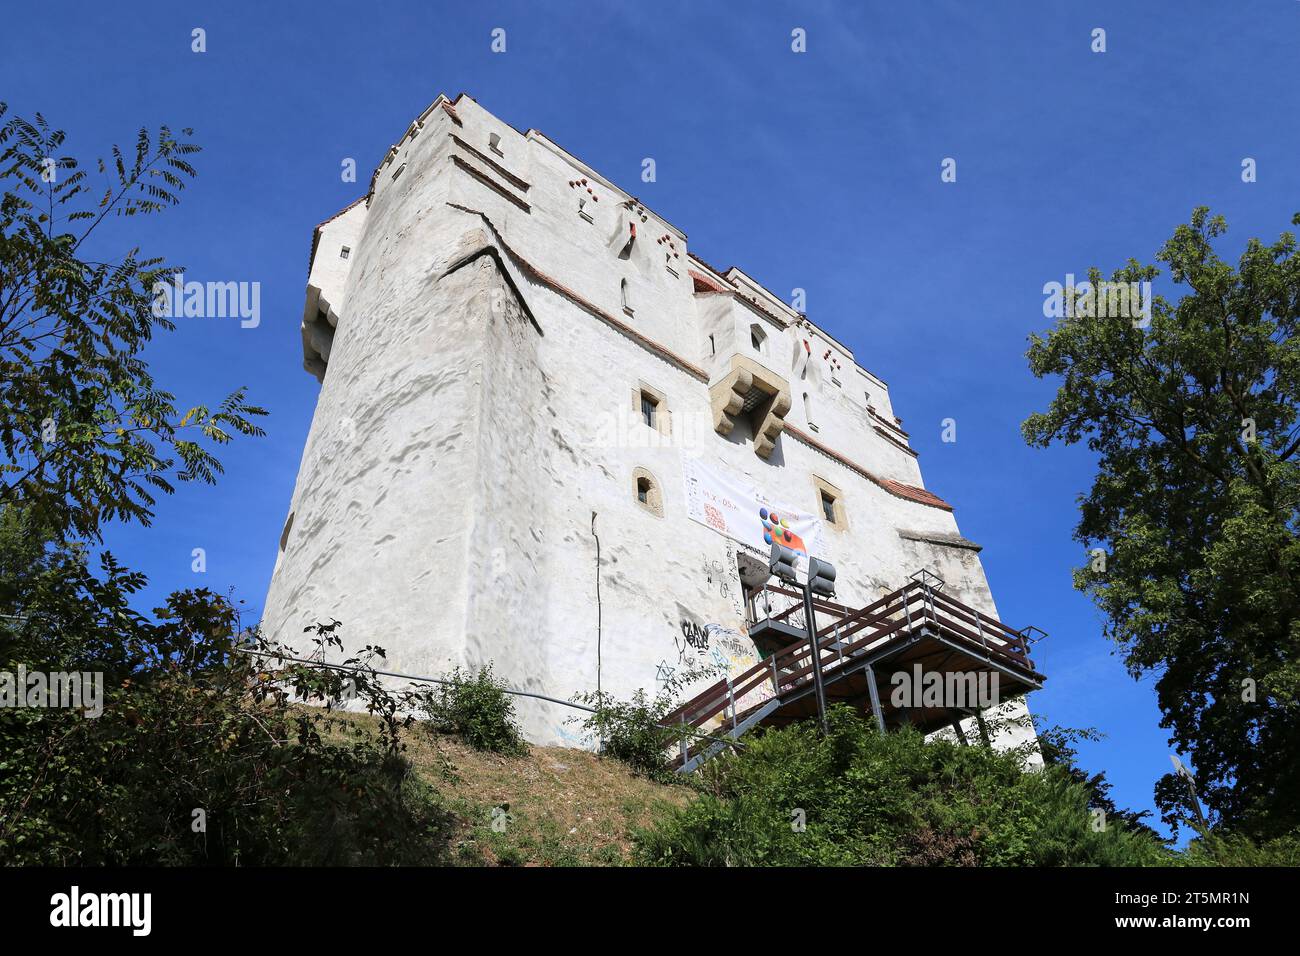 Turnul Alb (White Towe)r, Old Town Walls, Braşov, Braşov County, Transylvania, Romania, Europe Stock Photo